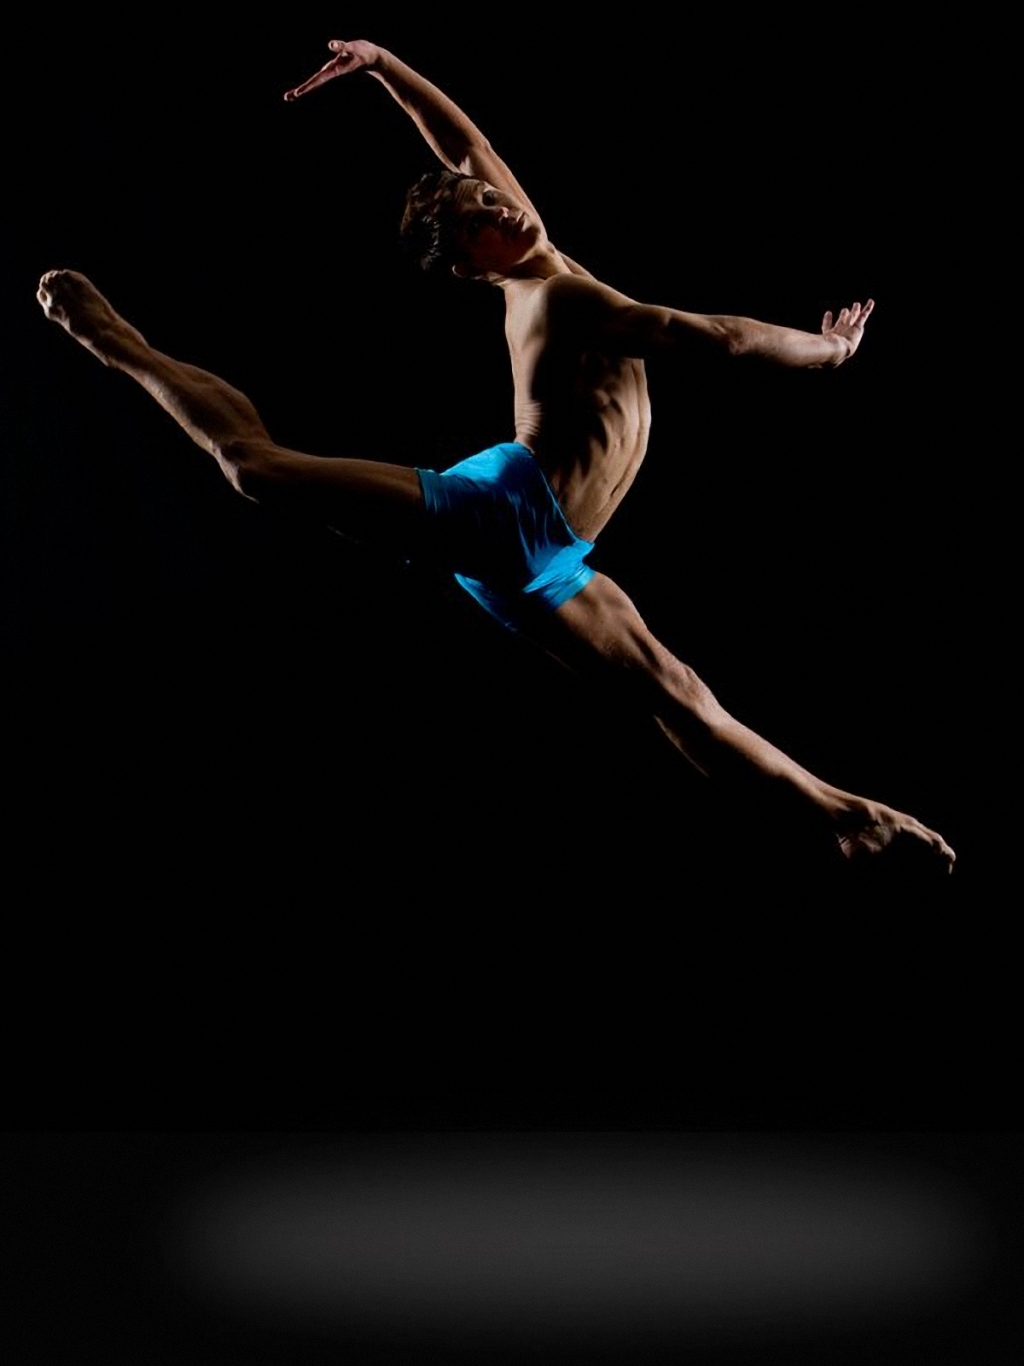 Прыжок в балете букв сканворд. Ричарда Калмса (Richard calmes. Прыжок в шпагат. Балетные прыжки.